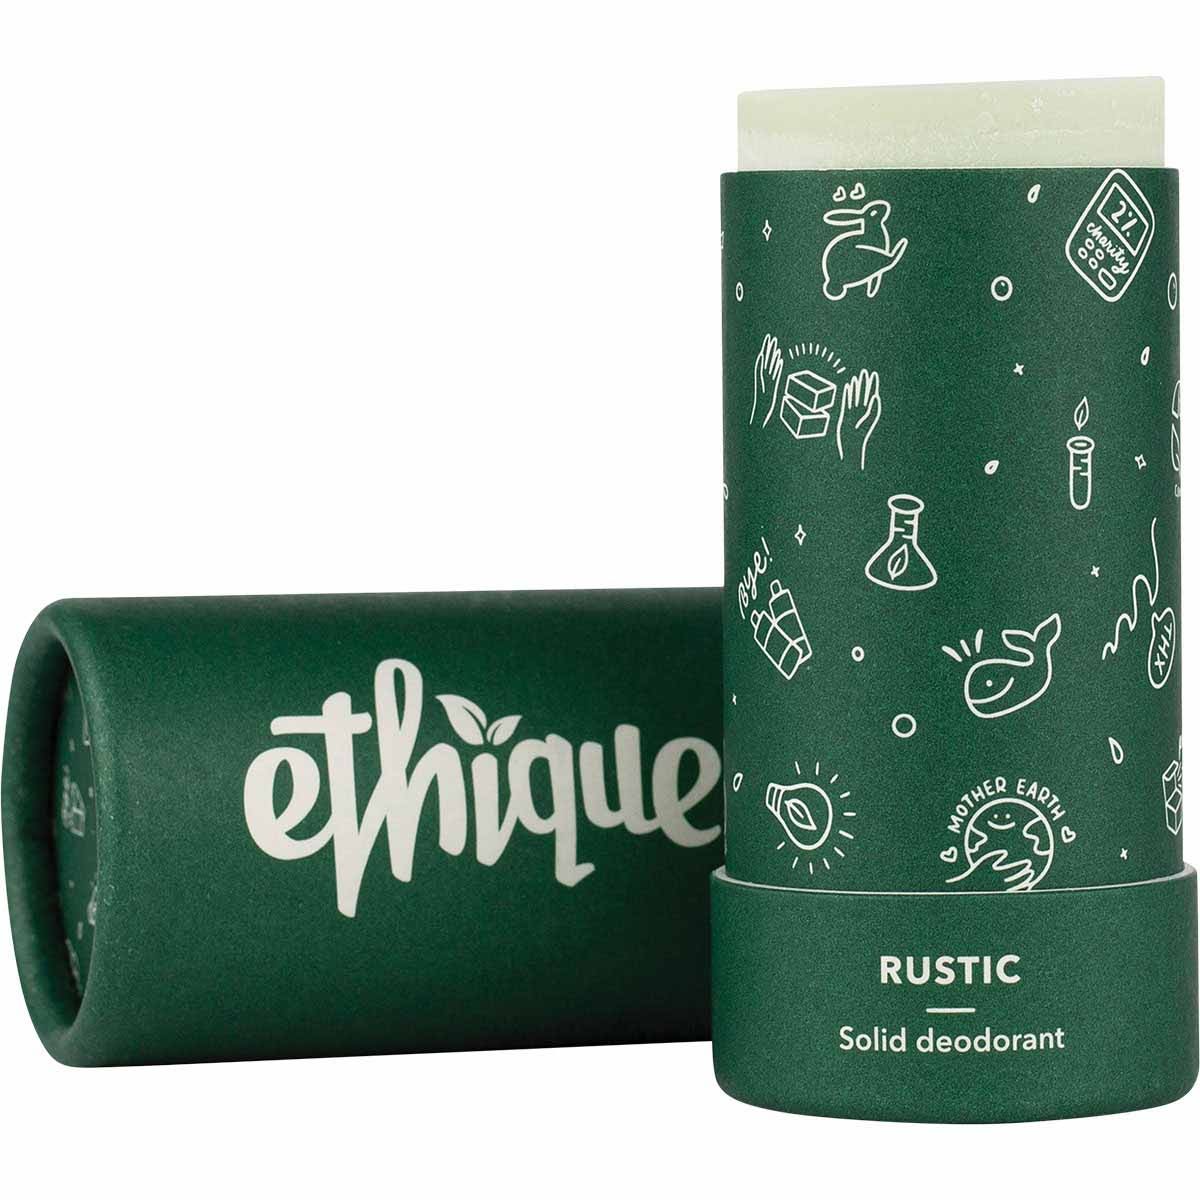 Ethique Botanica Solid Deodorant Stick - Rustic Lime & Eucalyptus Deodorant Stick (70g)